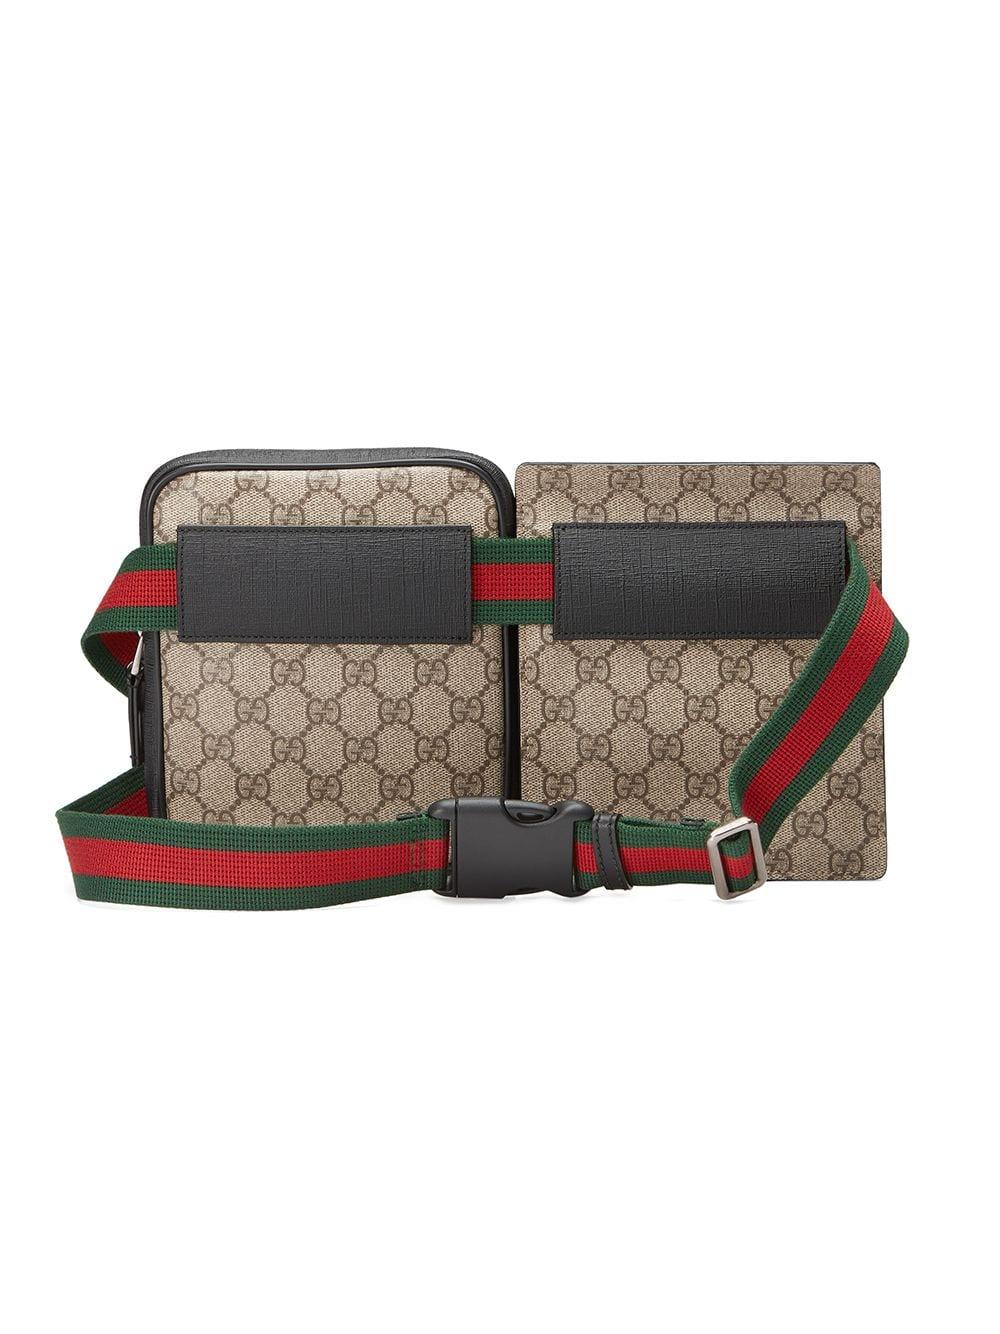 Gucci Canvas GG Supreme Belt Bag for Men - Lyst